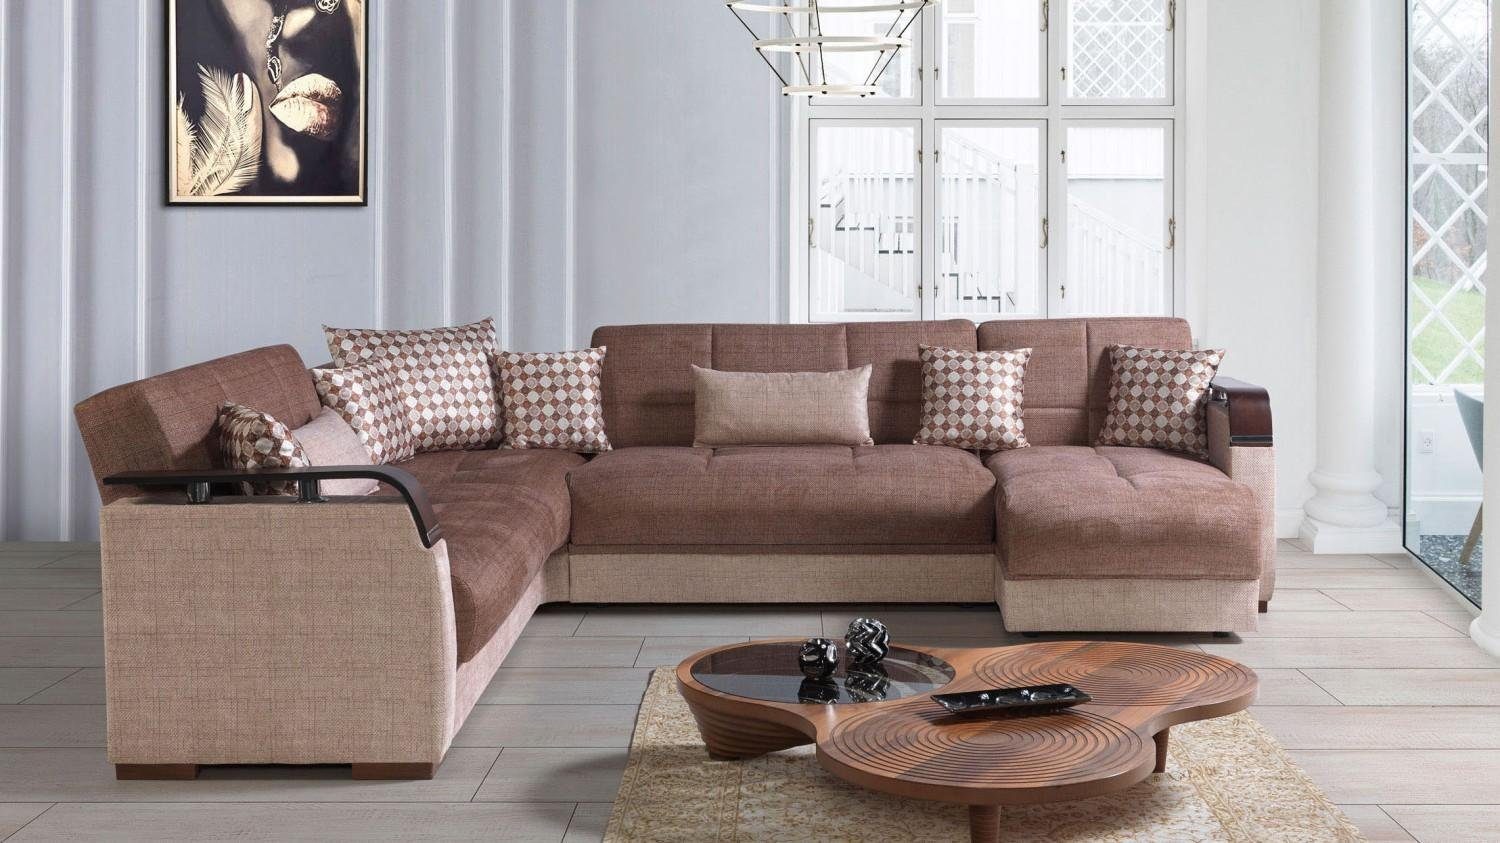 JVmoebel Ecksofa Ecksofa Wohnlandschaft Braun Wohnzimmer In Ecksofas L-Form Europe Made Sofa Luxus